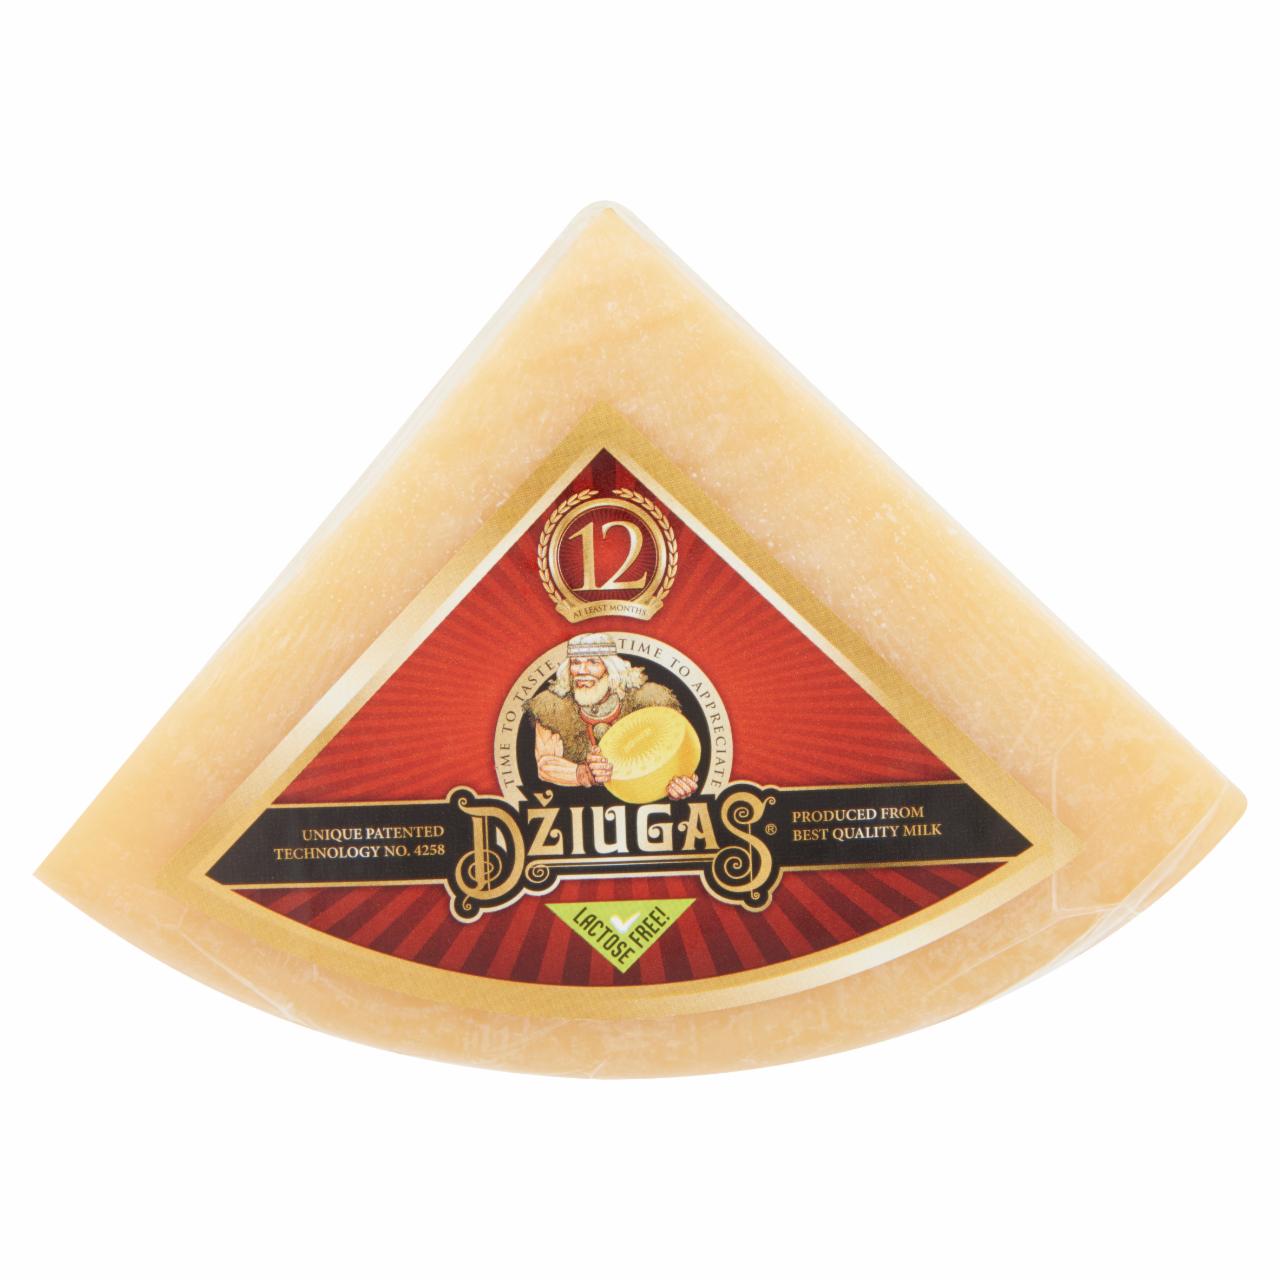 Képek - Džiugas laktózmentes, darabolt, 12 hónapos érlelésű kemény sajt